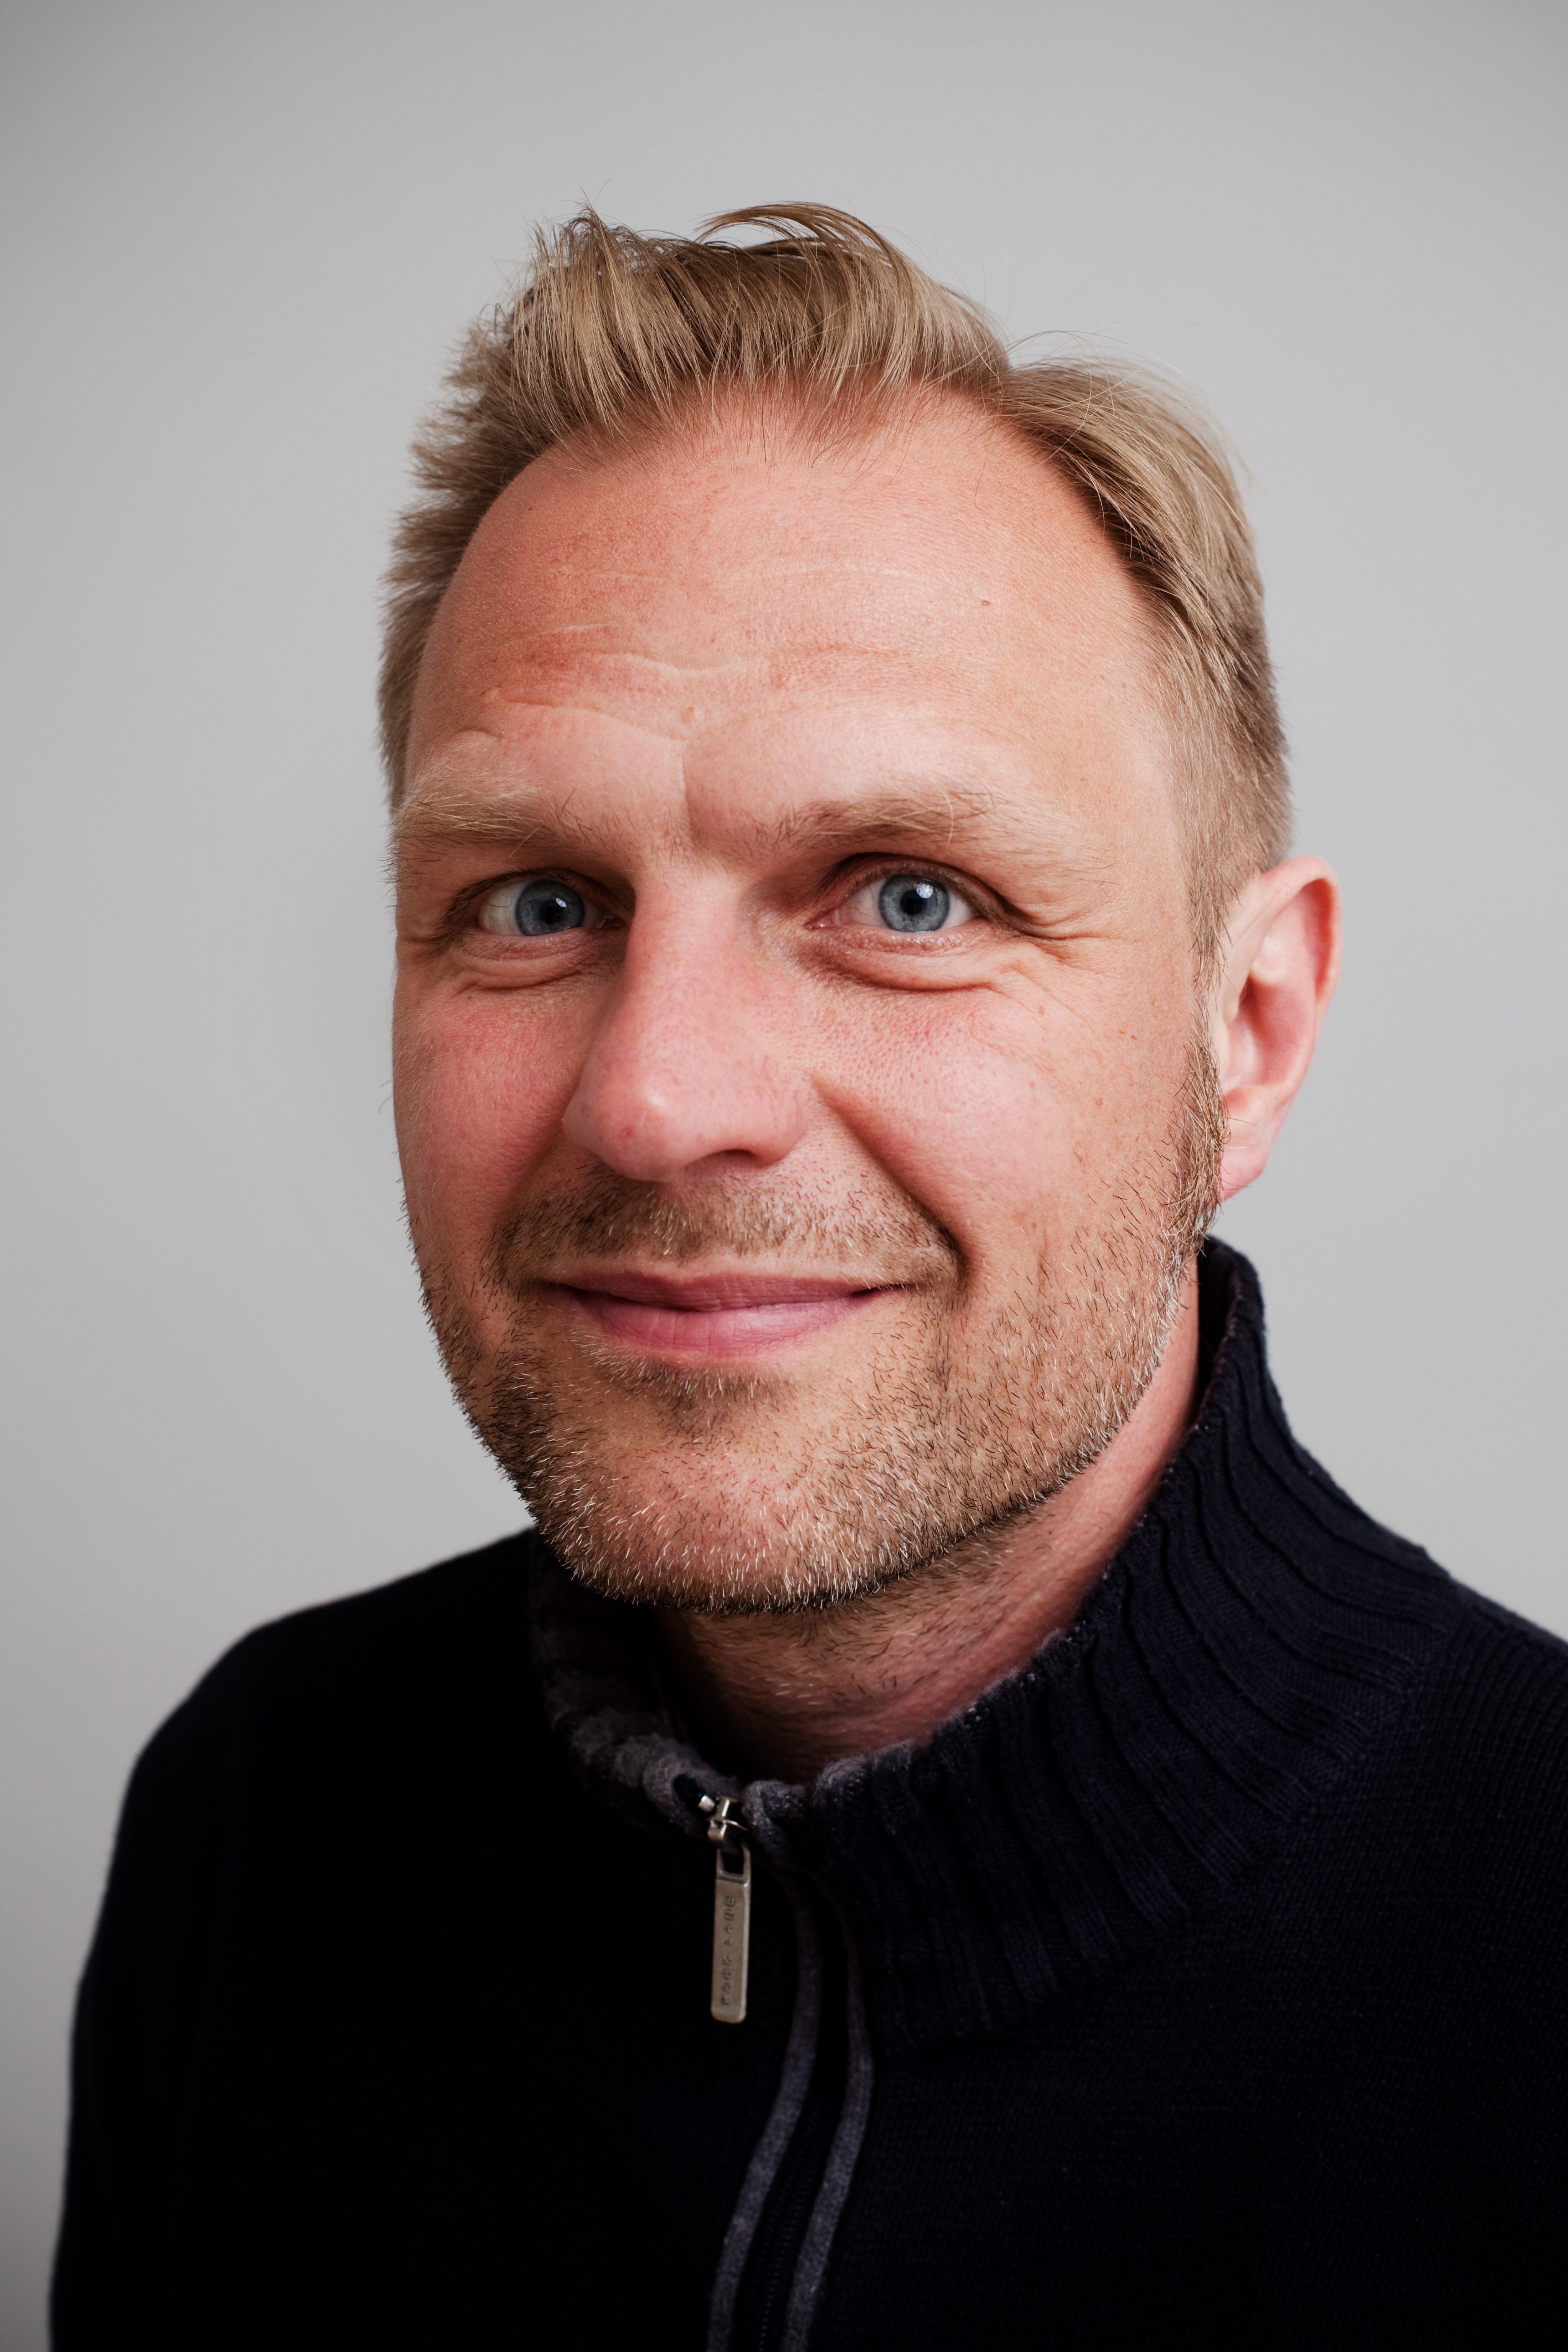 Journalistförbundets ordförande Jonas Nordling är missnöjd med att regeringen inte betalar svenskarnas advokater och menar att det är ett angrepp på pressfrihet om Schibbye och Persson döms för något mer än att de tagit sig in i landet illegalt.